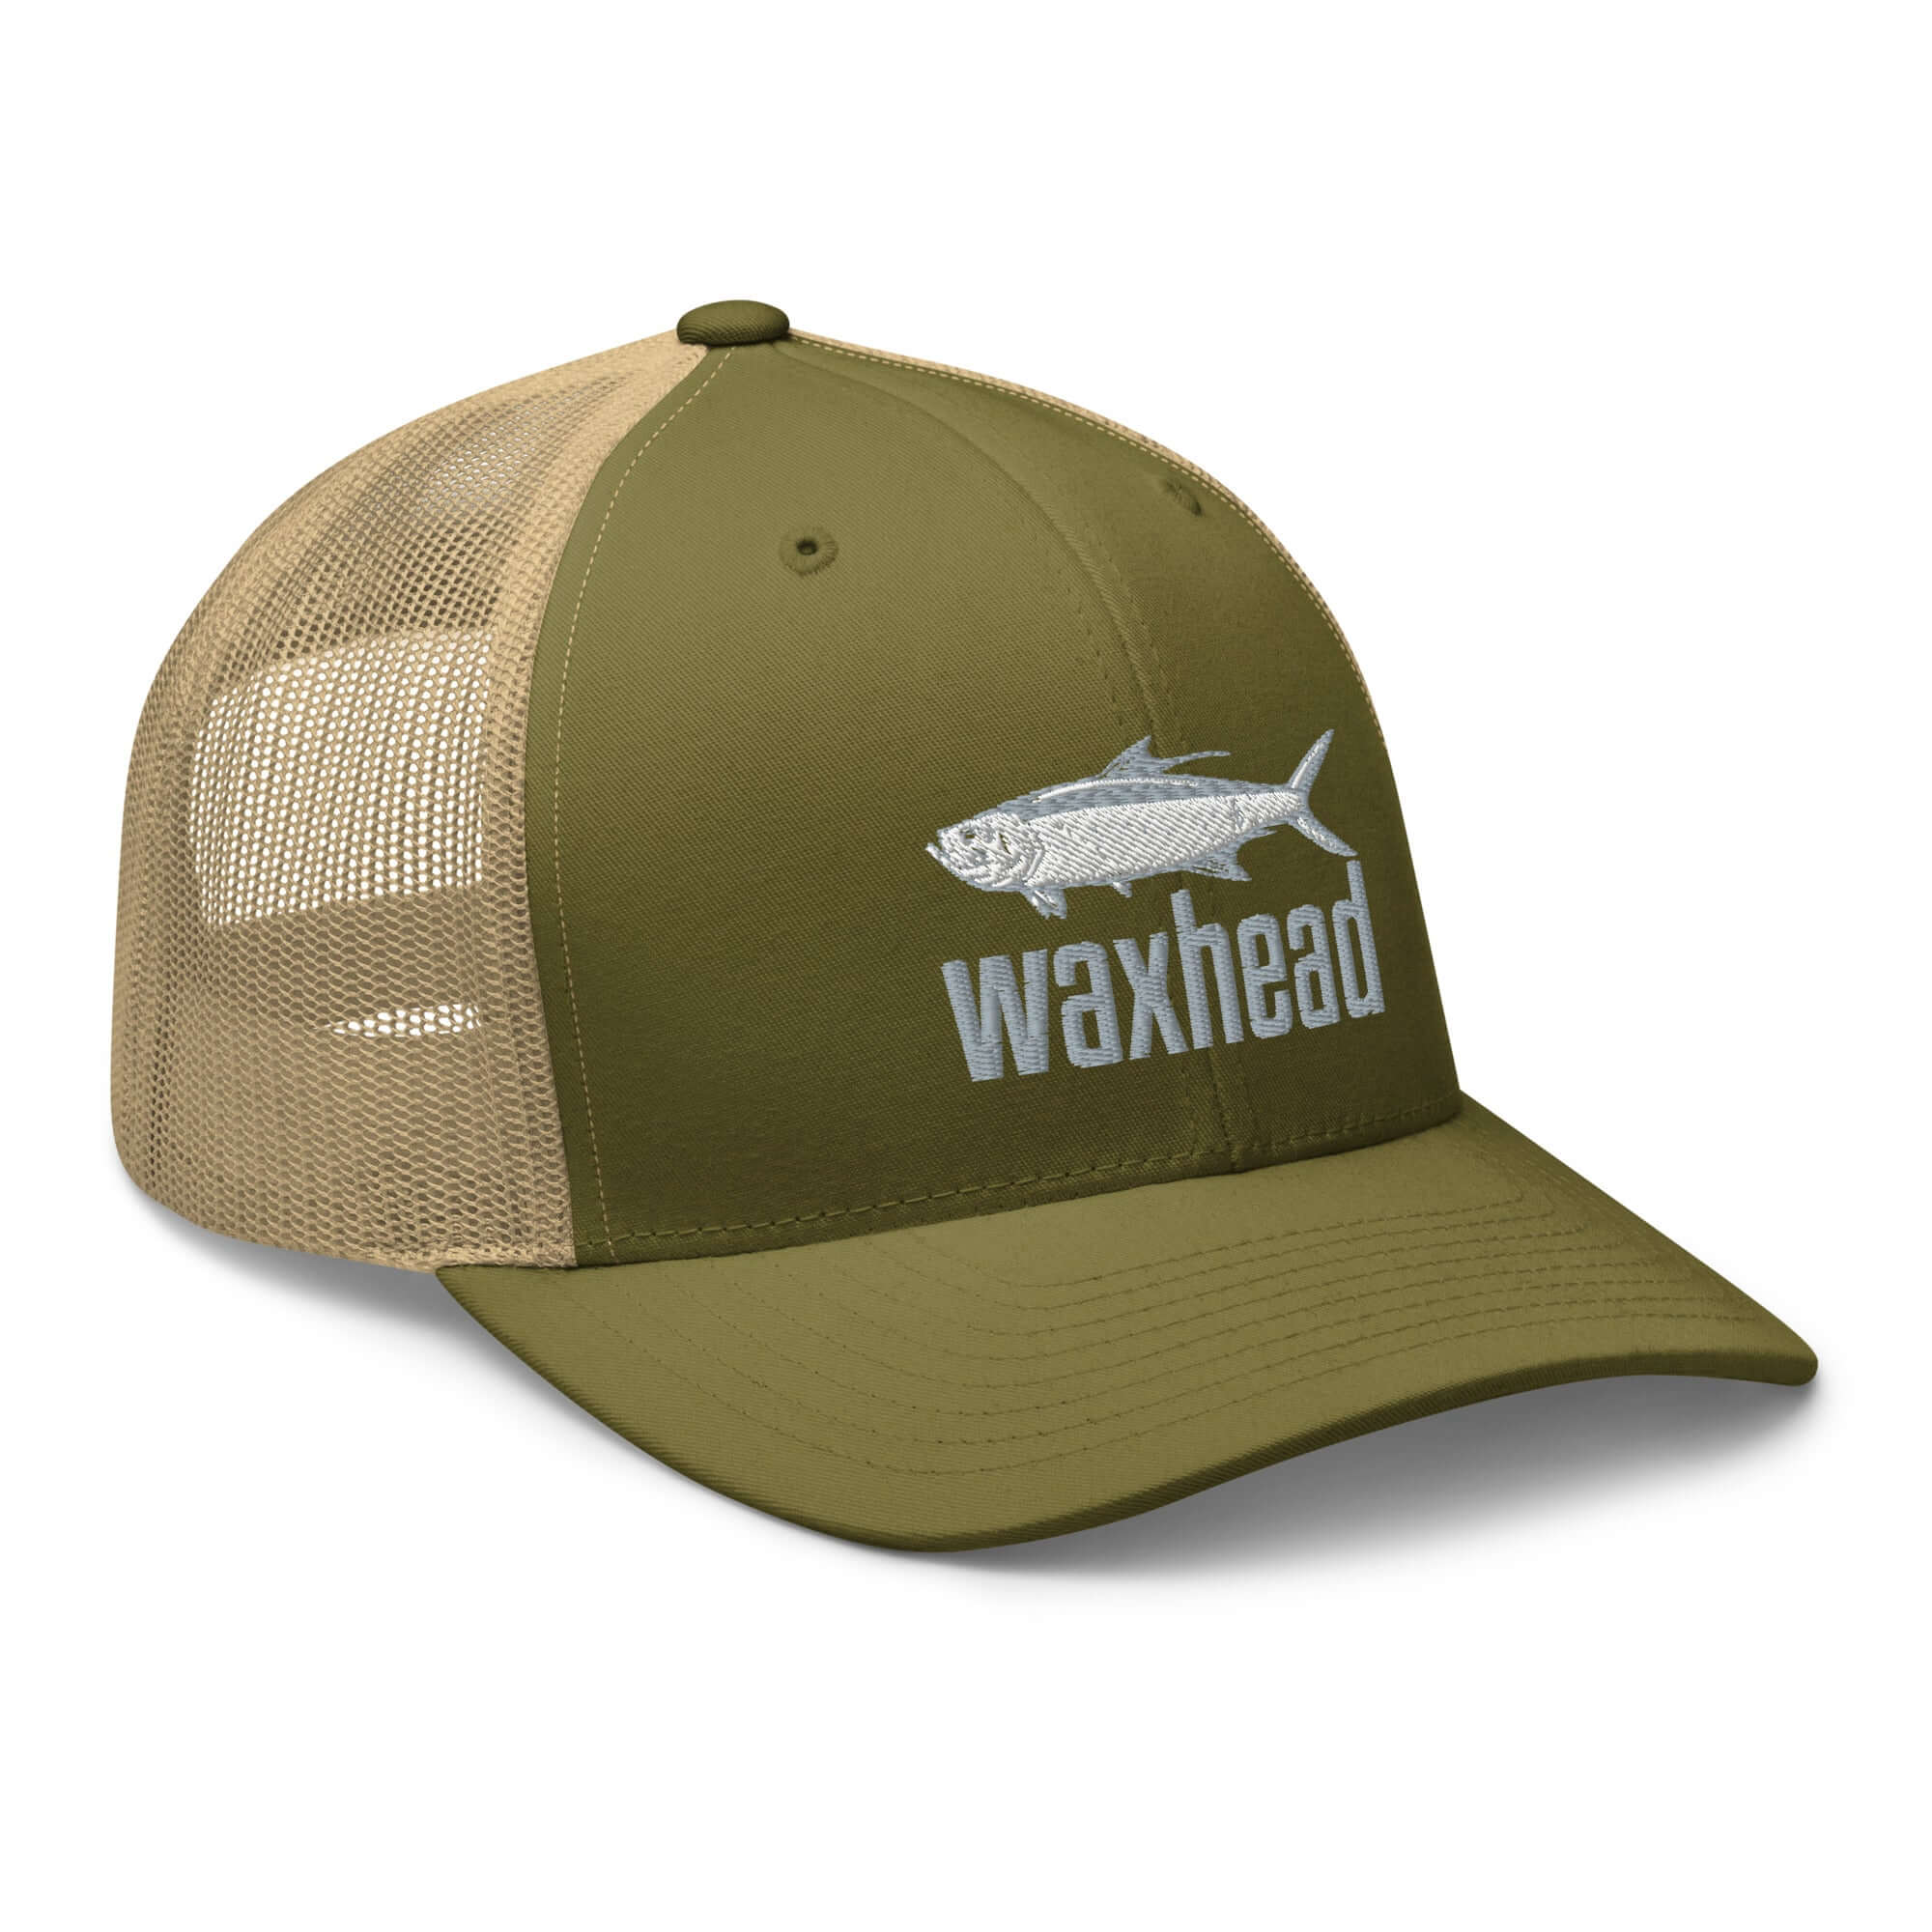 Tarpon Fishing Hat for Men and Women | Tarpon Hat Black